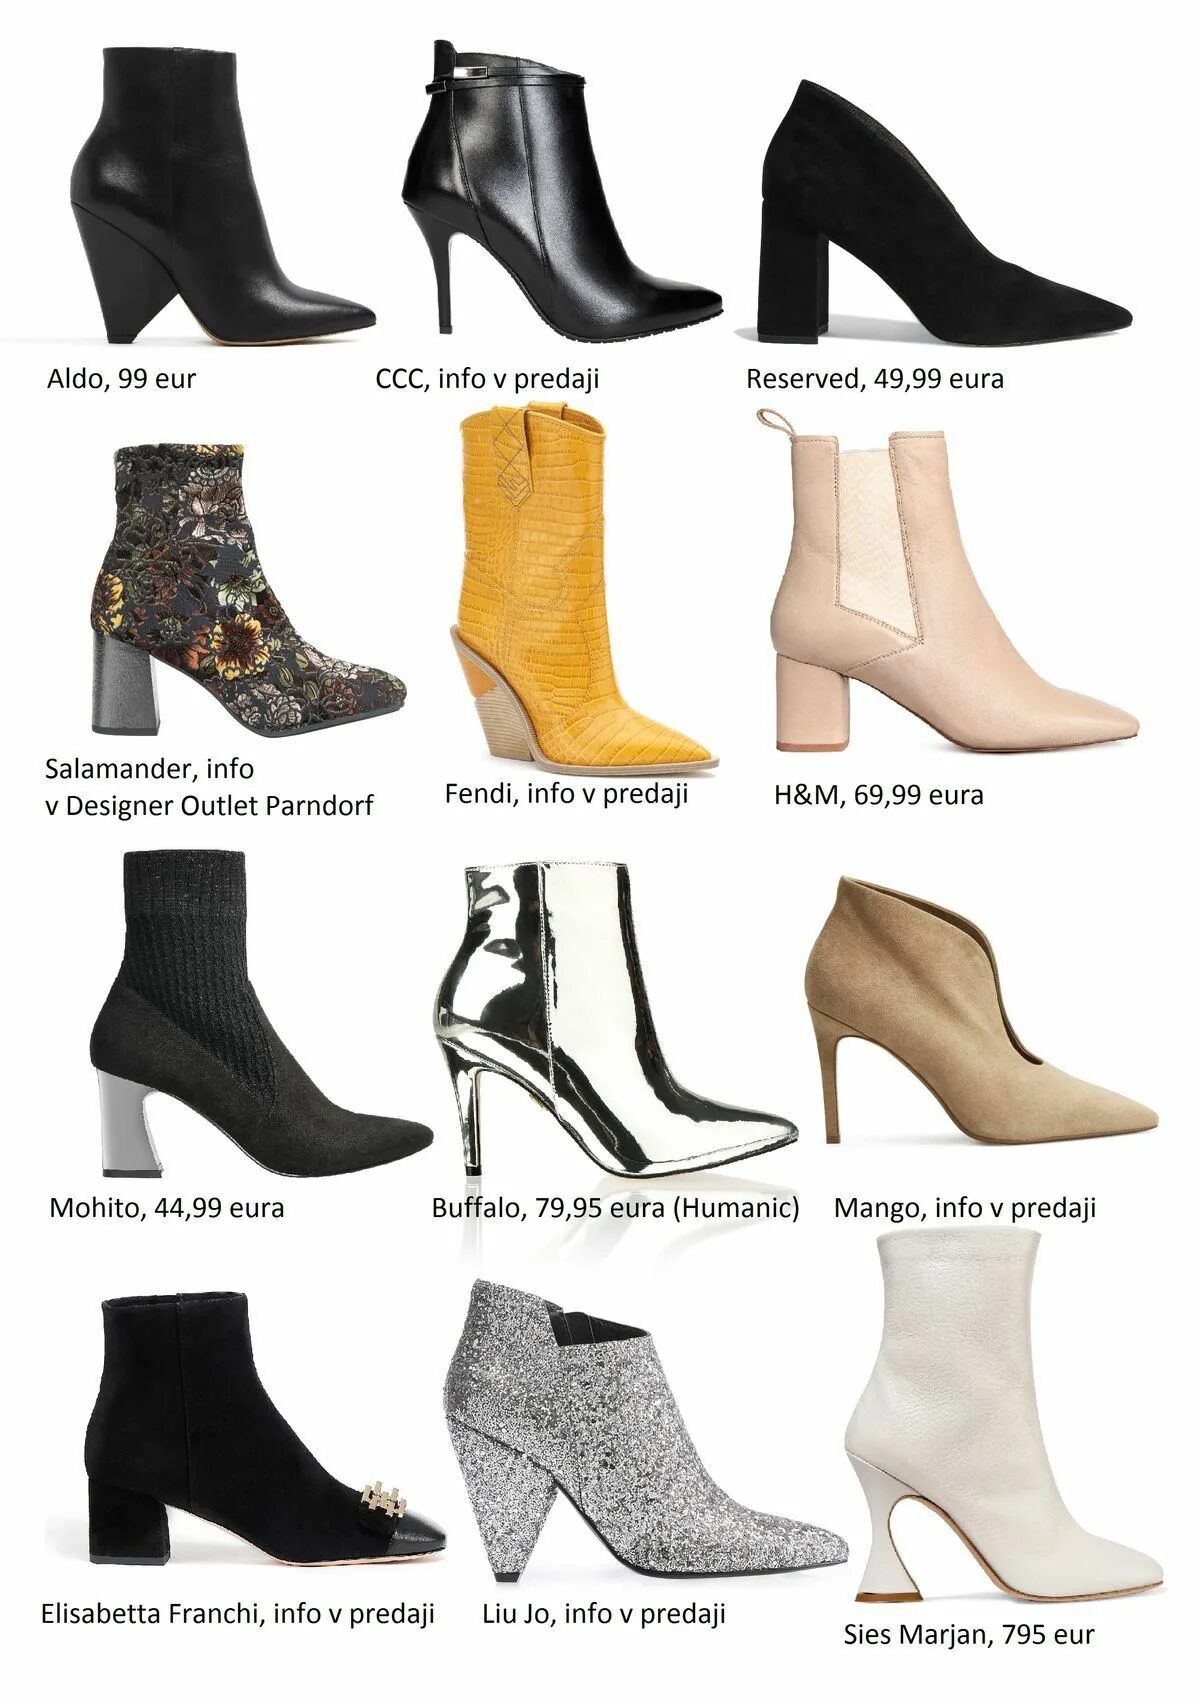 Название летней женской обуви. Женская обувь названия моделей. Наименование обуви женской. Современные модели женской обуви. Модели женских туфель с названиями.